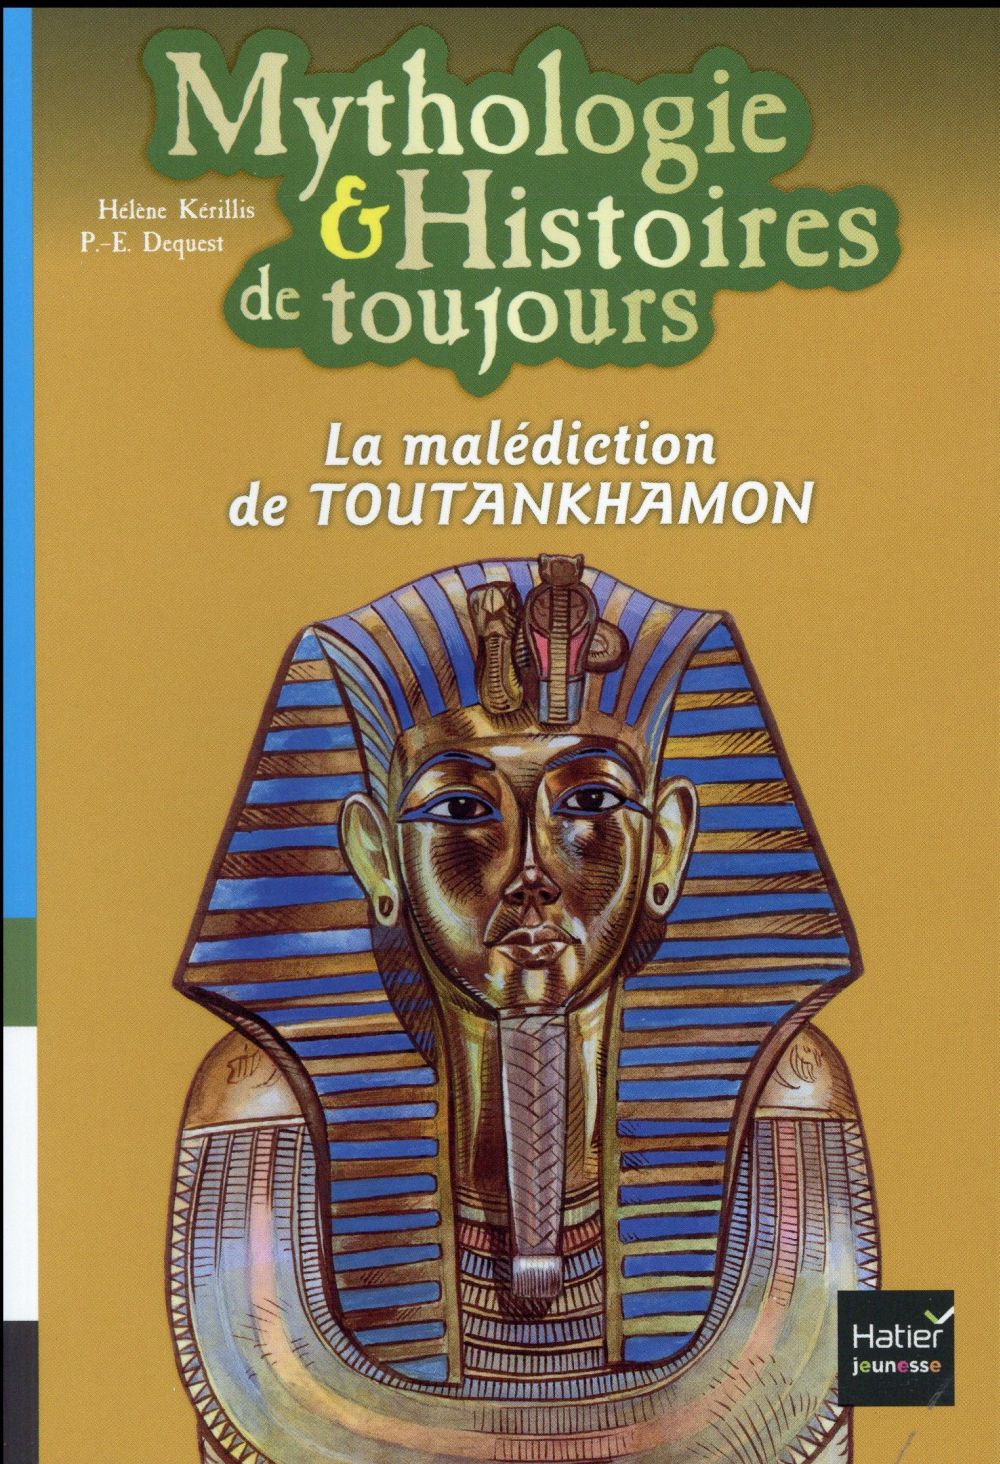 MYTHOLOGIE ET HISTOIRES DE TOUJOURS - T04 - MYTHOLOGIE ET HISTOIRES DE TOUJOURS - LA MALEDICTION DE